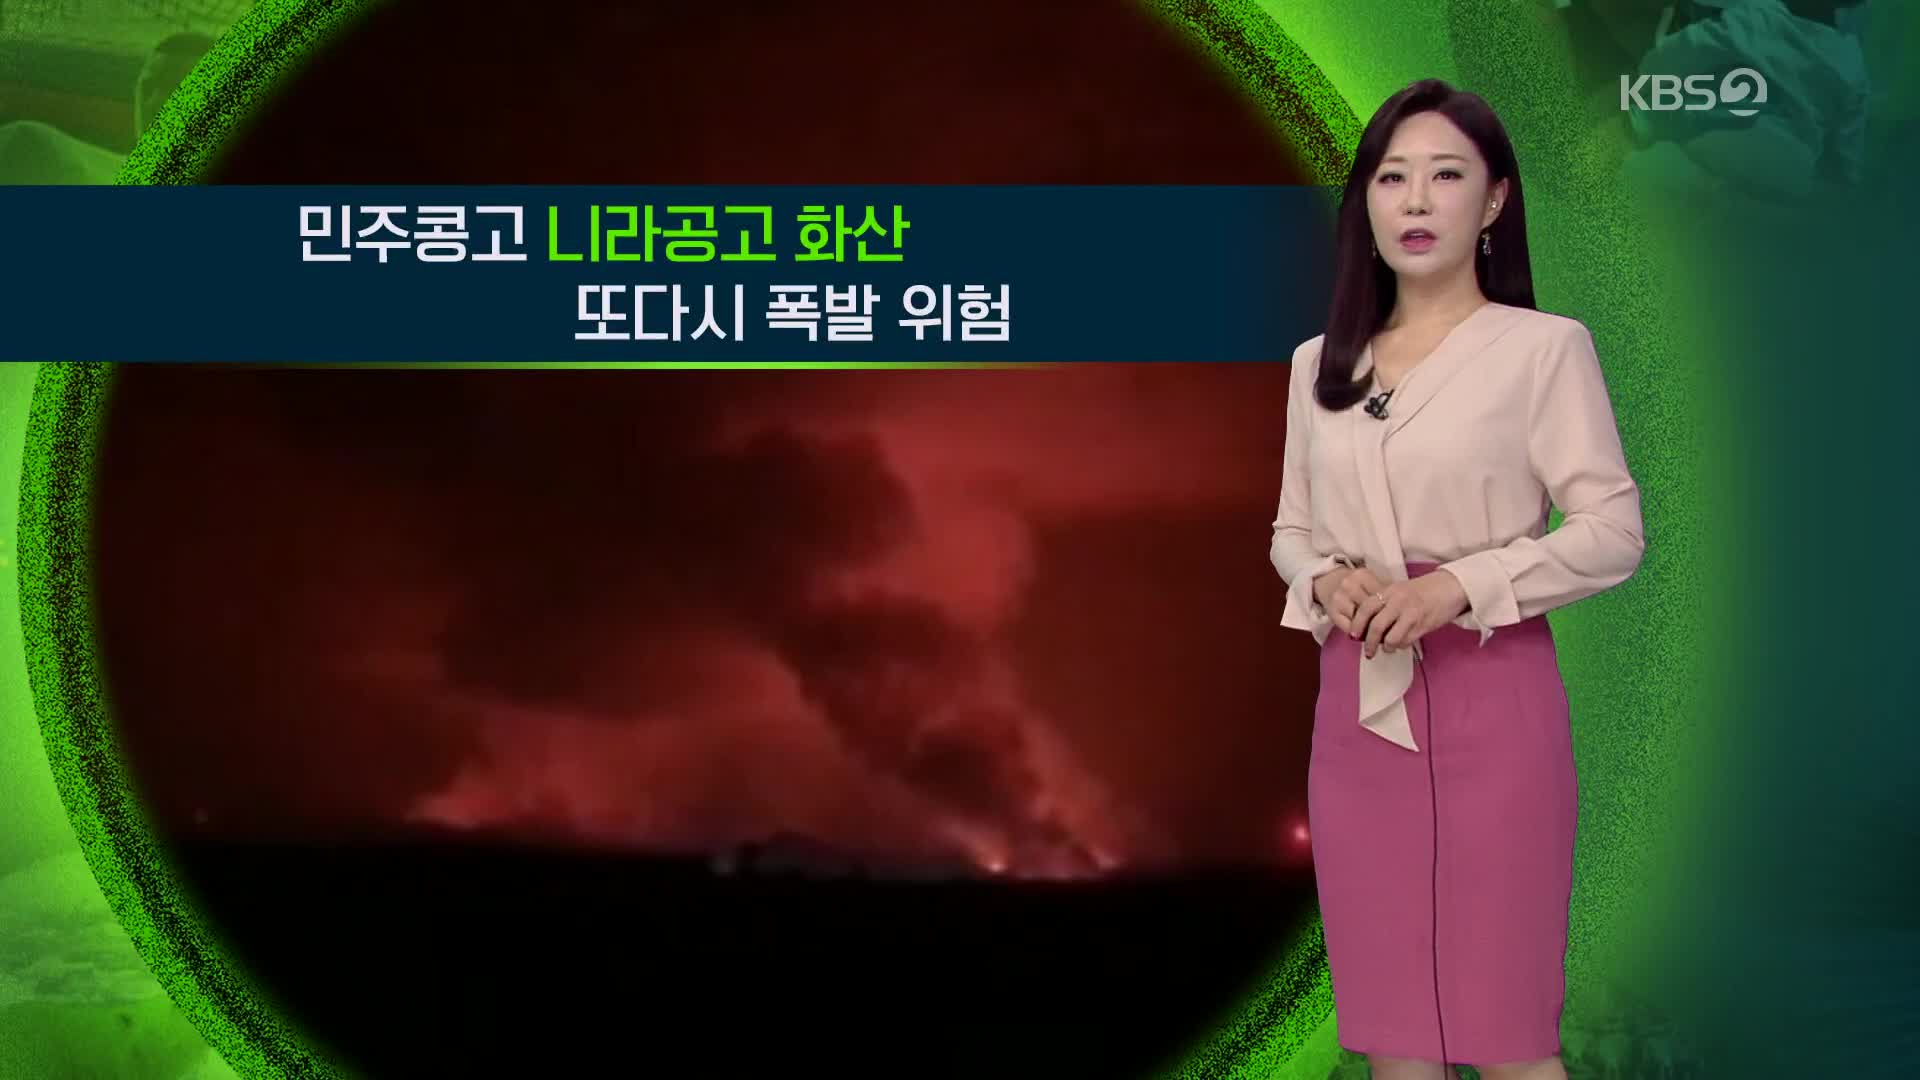 [지구촌 날씨] 민주콩고 니라공고 화산 또다시 폭발 위험